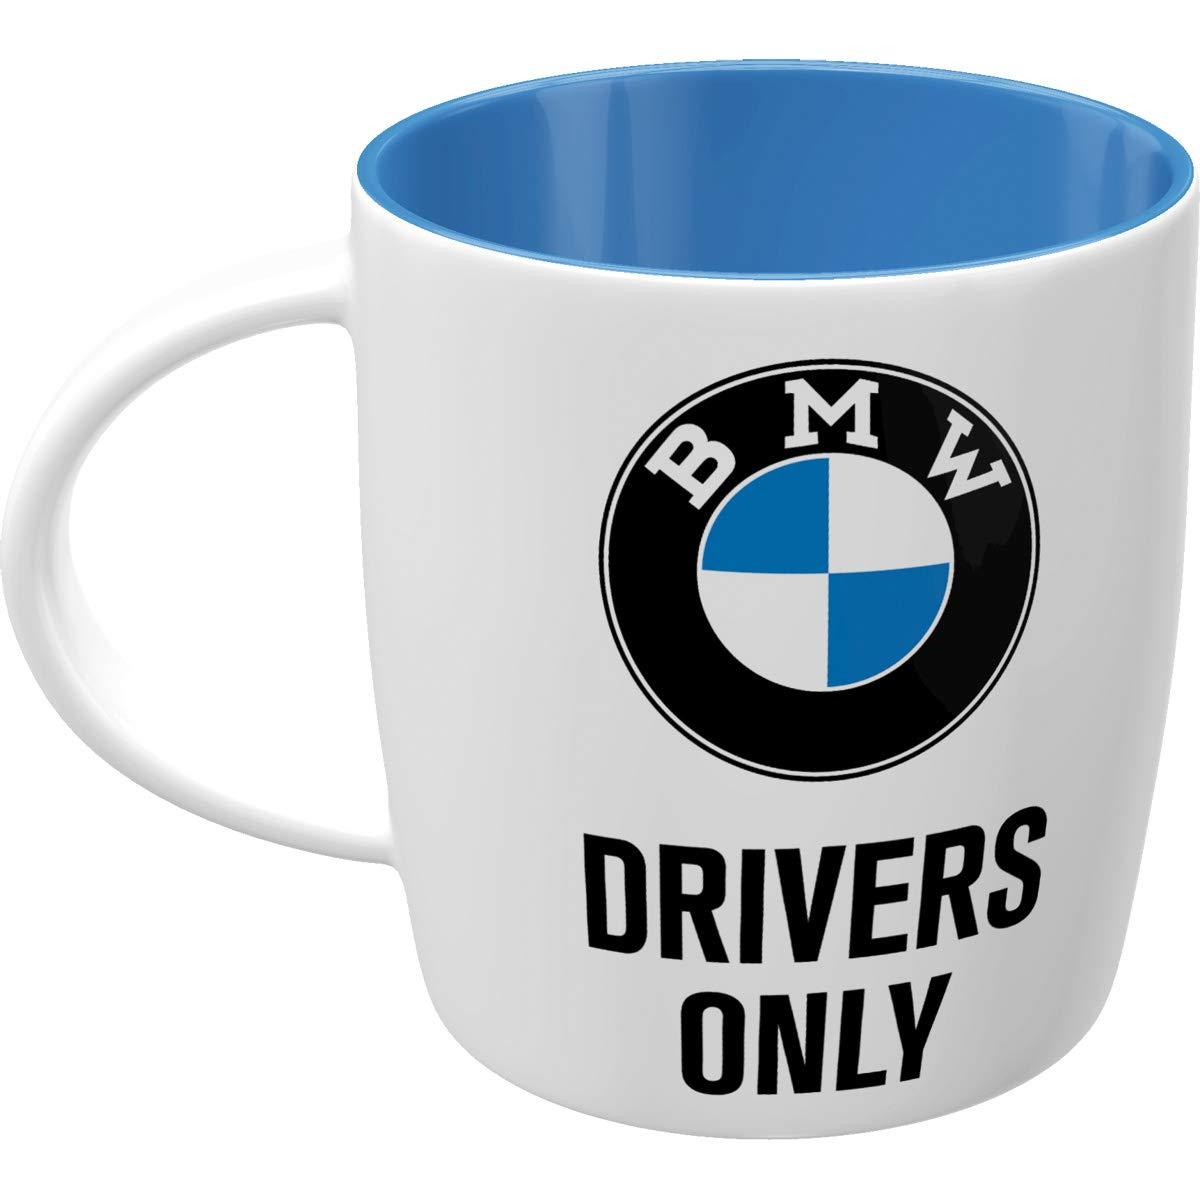 BMW Drivers Only Ceramic Mug with BMW Logo